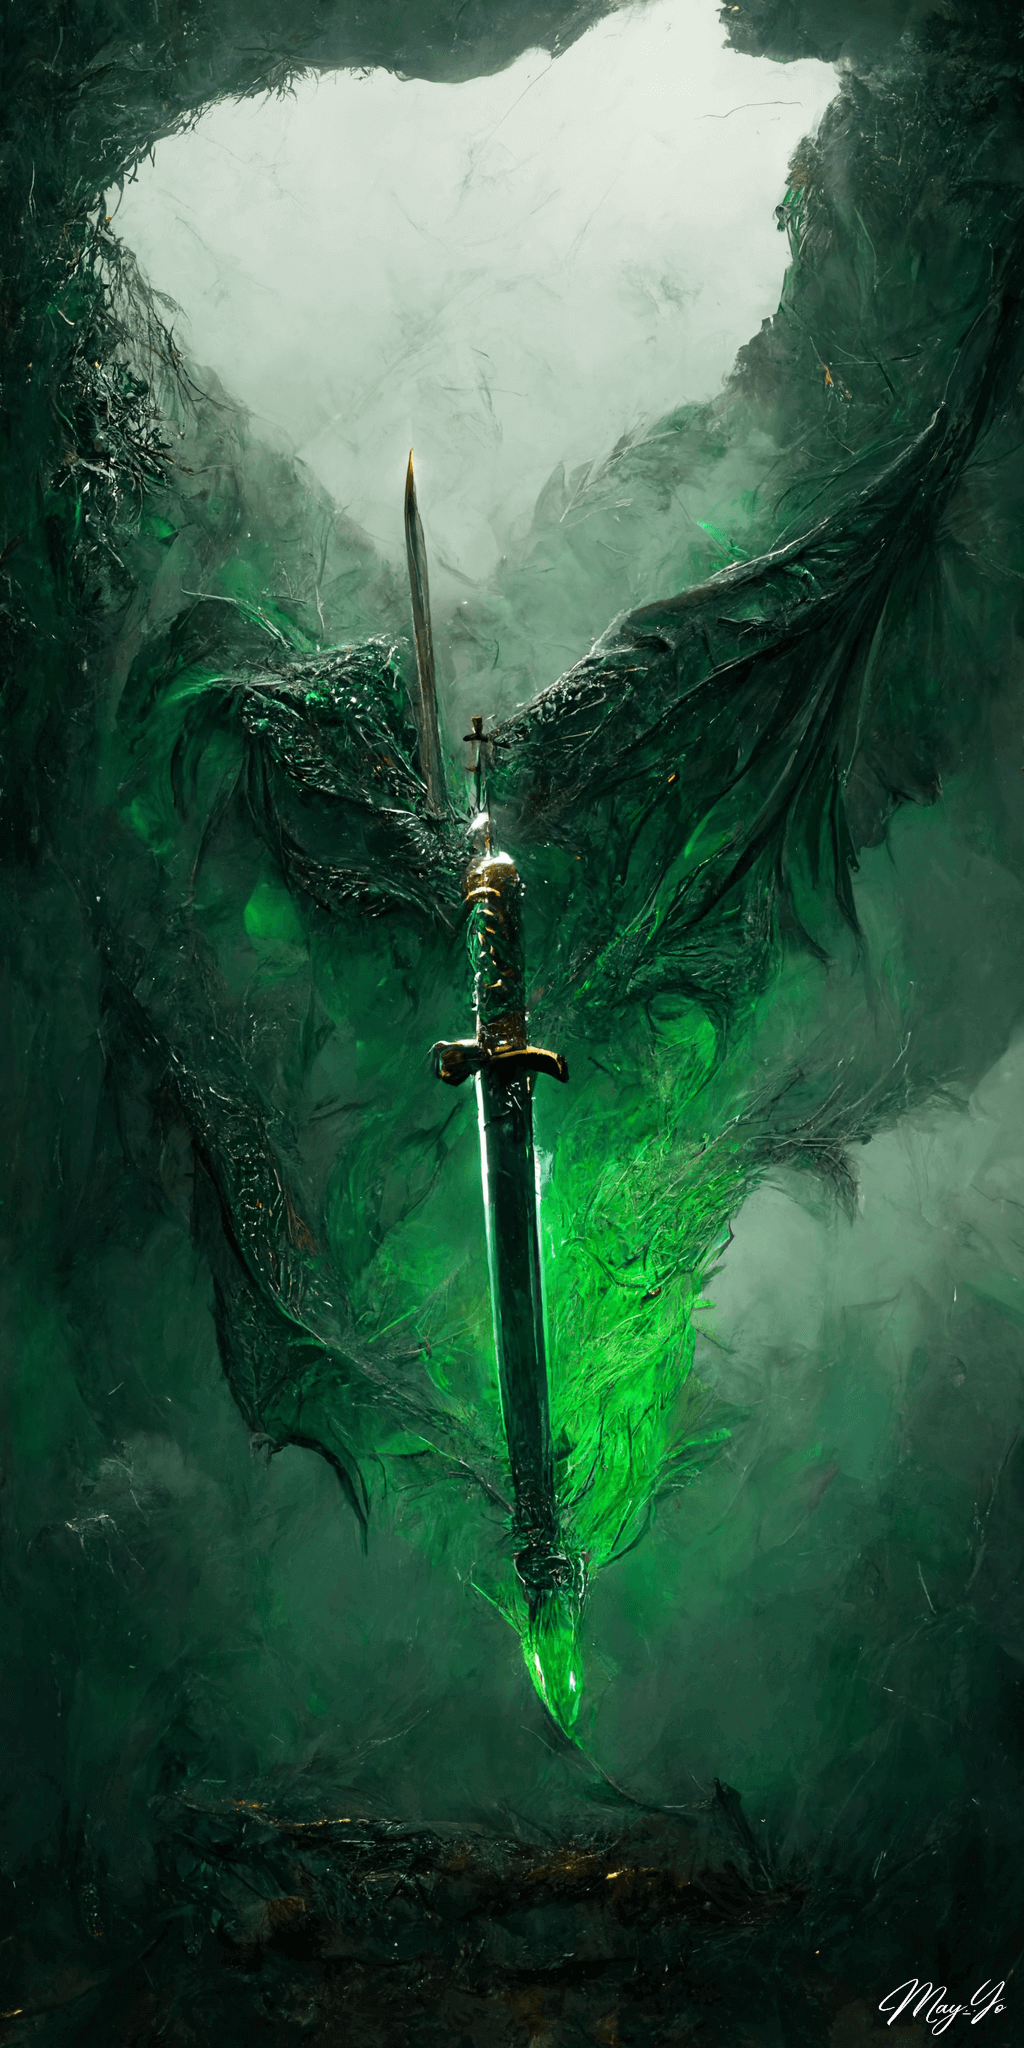 エメラルドの翼竜と伝説の剣の壁紙イラスト 輝く剣 幻想的な挿絵風の待受 AIイラスト待受 縦長画像 green emerald legend sword illustration emerald dragon fiction art